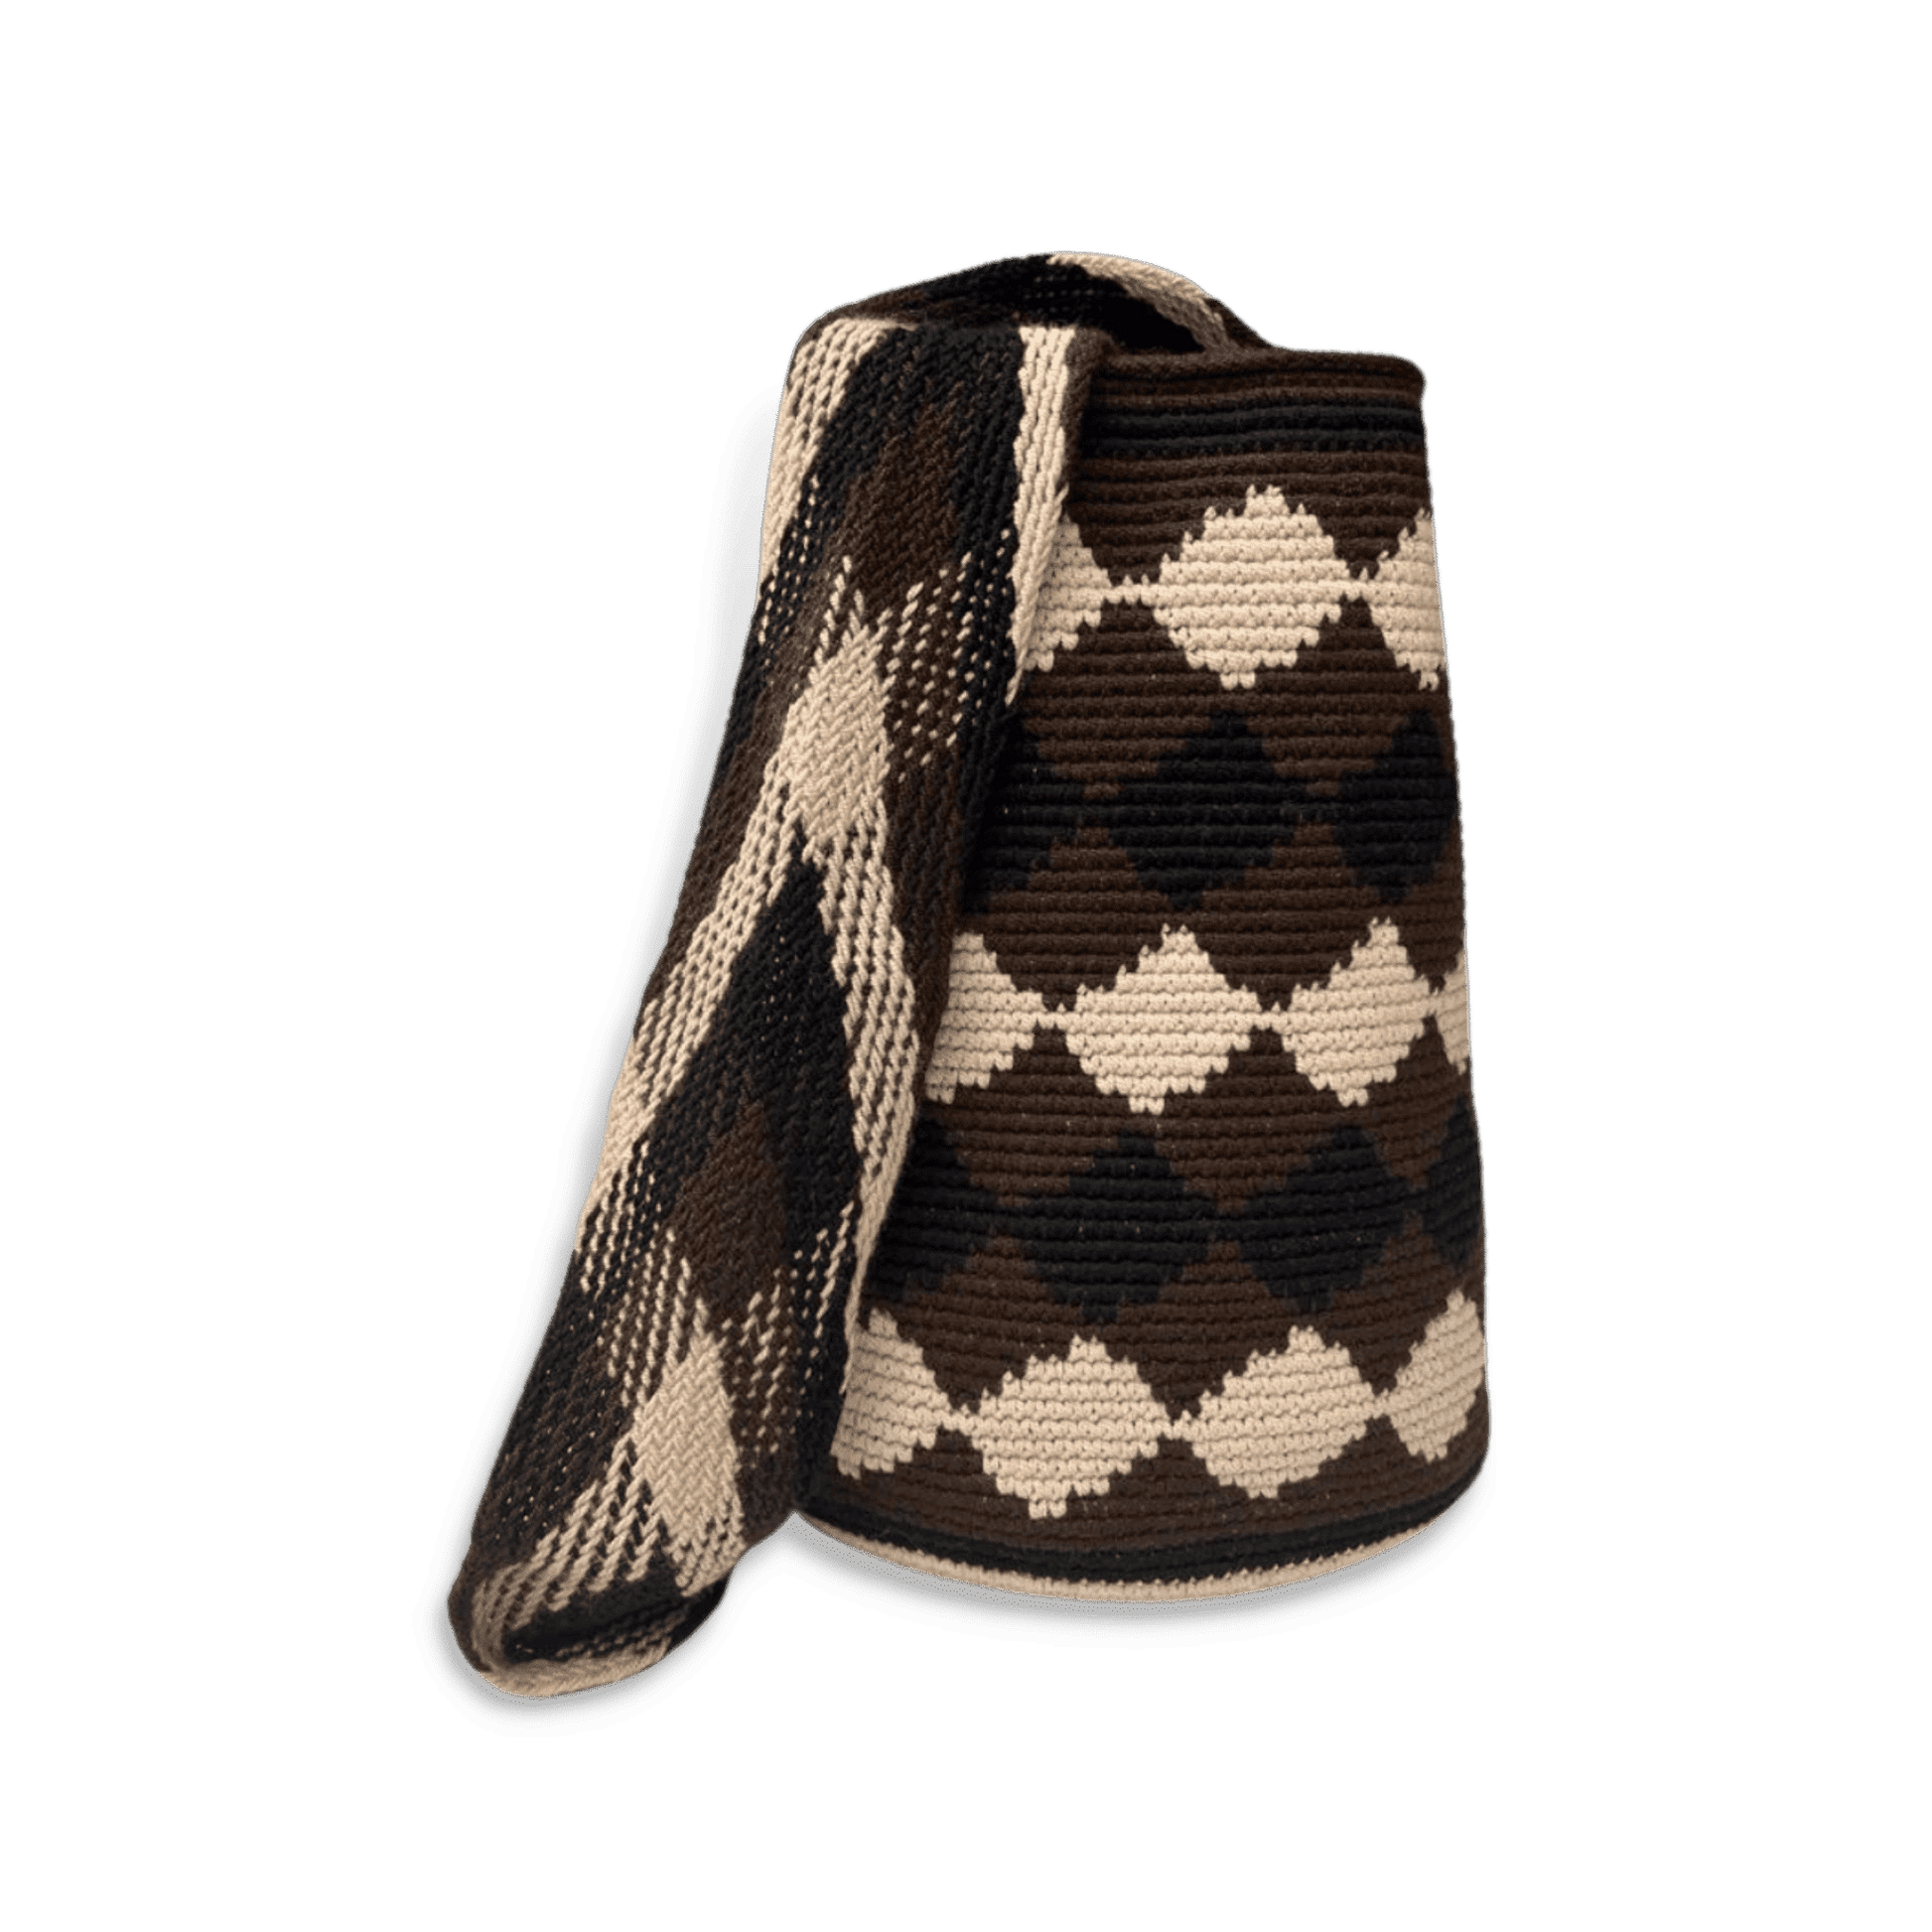 Mochila wayuu original para hombre diseño de rombos colores negro, cafe y beige